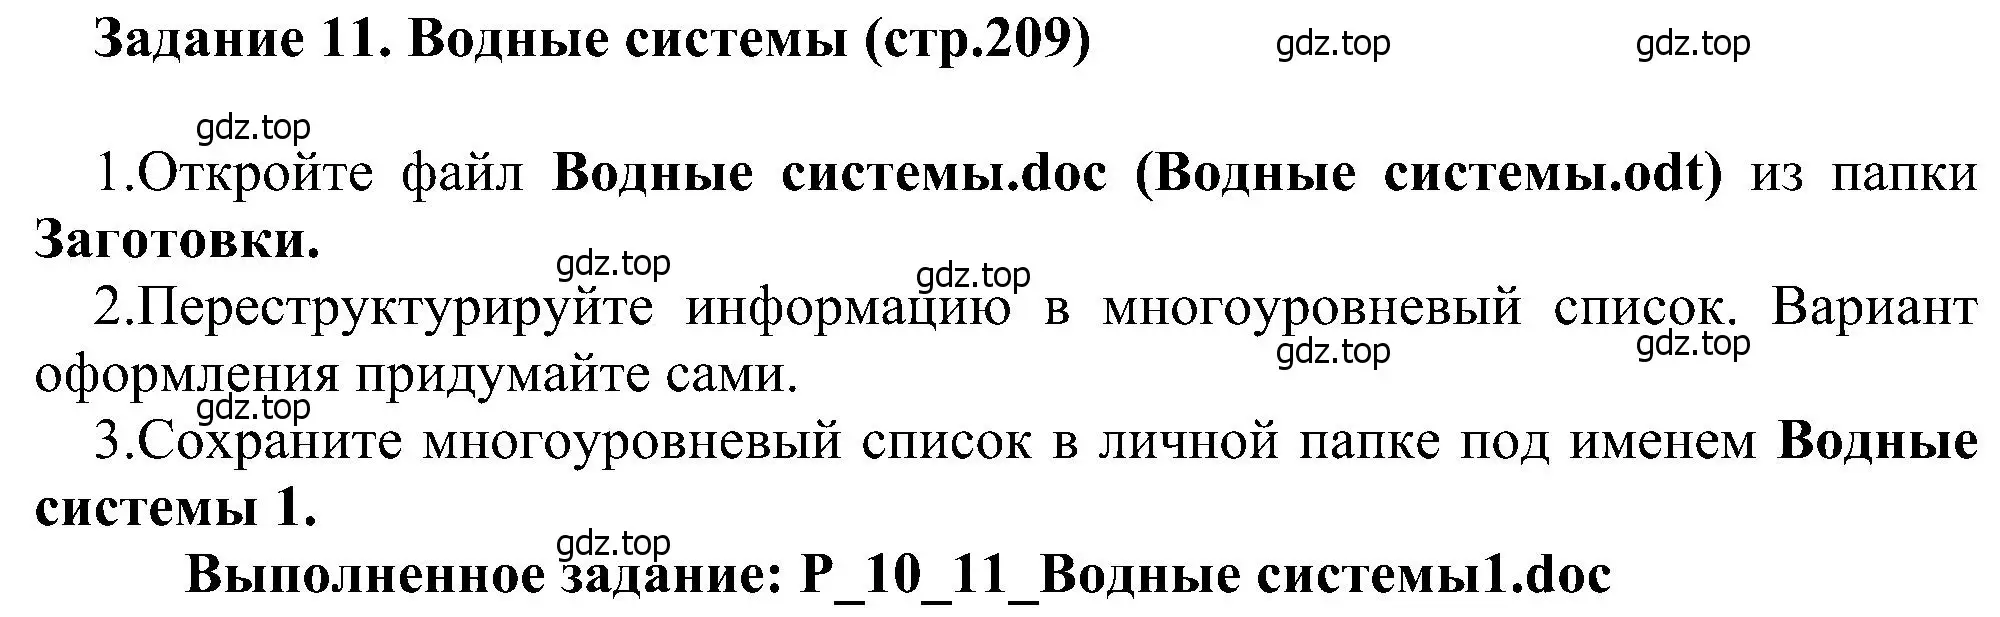 Решение номер 11 (страница 209) гдз по информатике 6 класс Босова, Босова, учебник